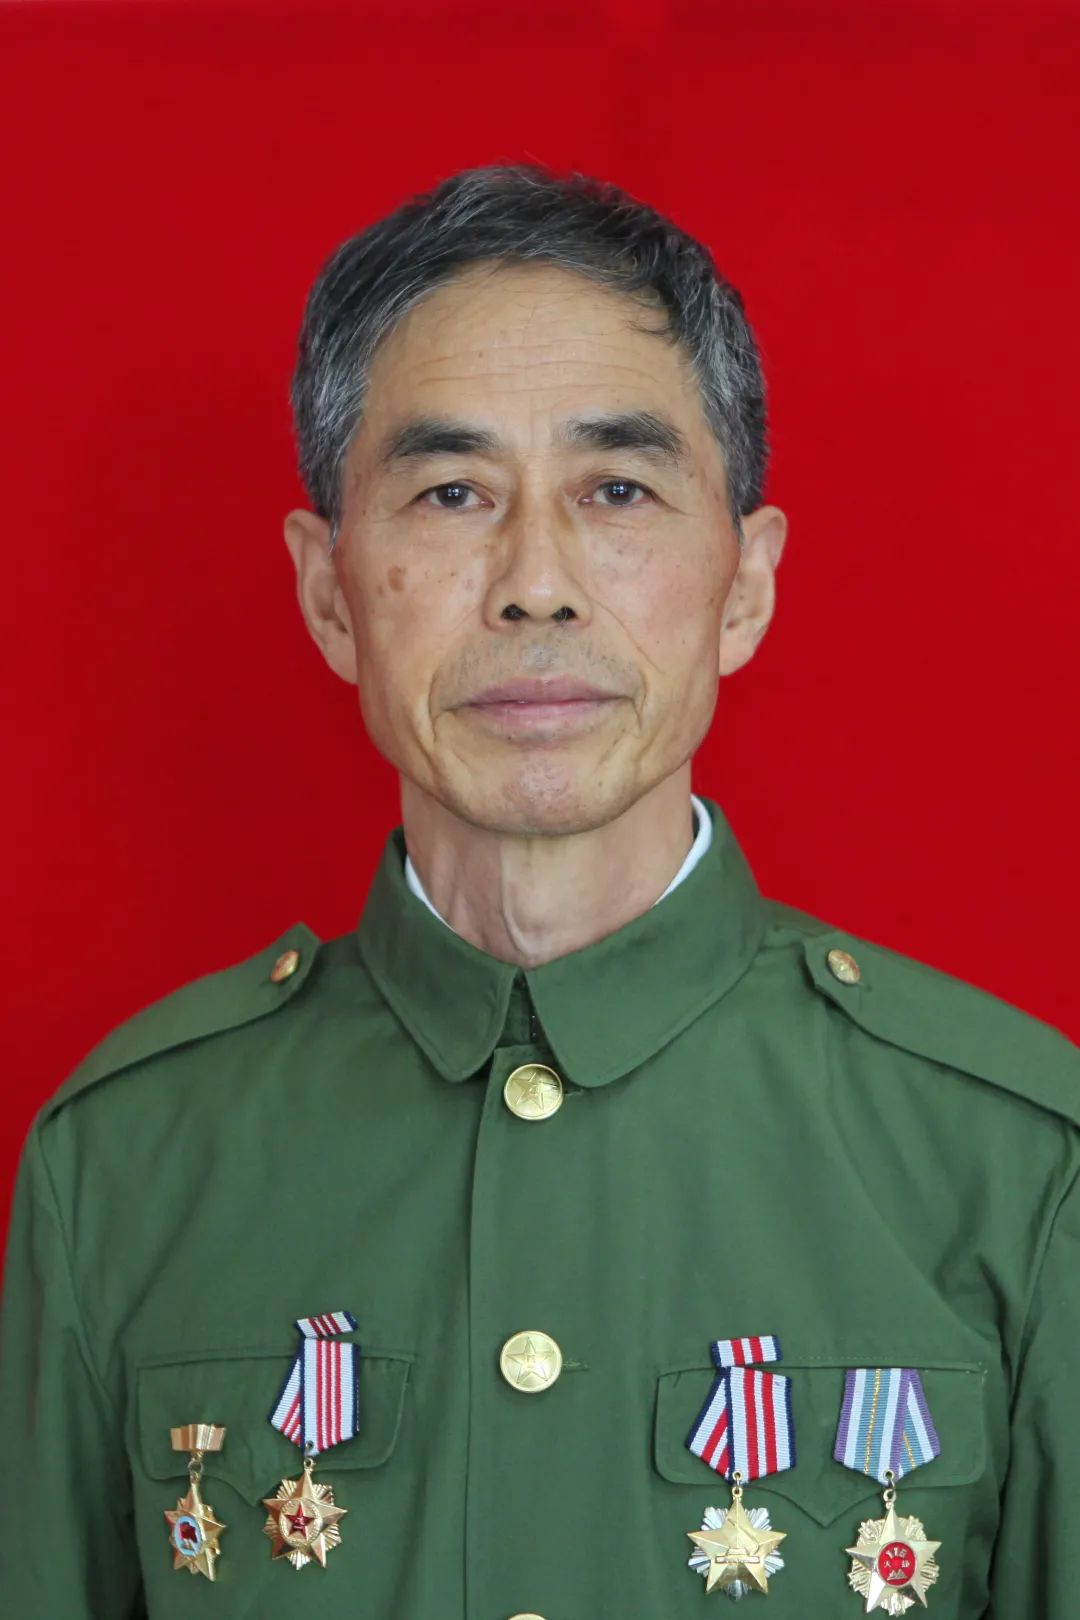 1984年,时年29岁的朱兴清,担任解放军某部炮兵连连长,奉命随部队南下